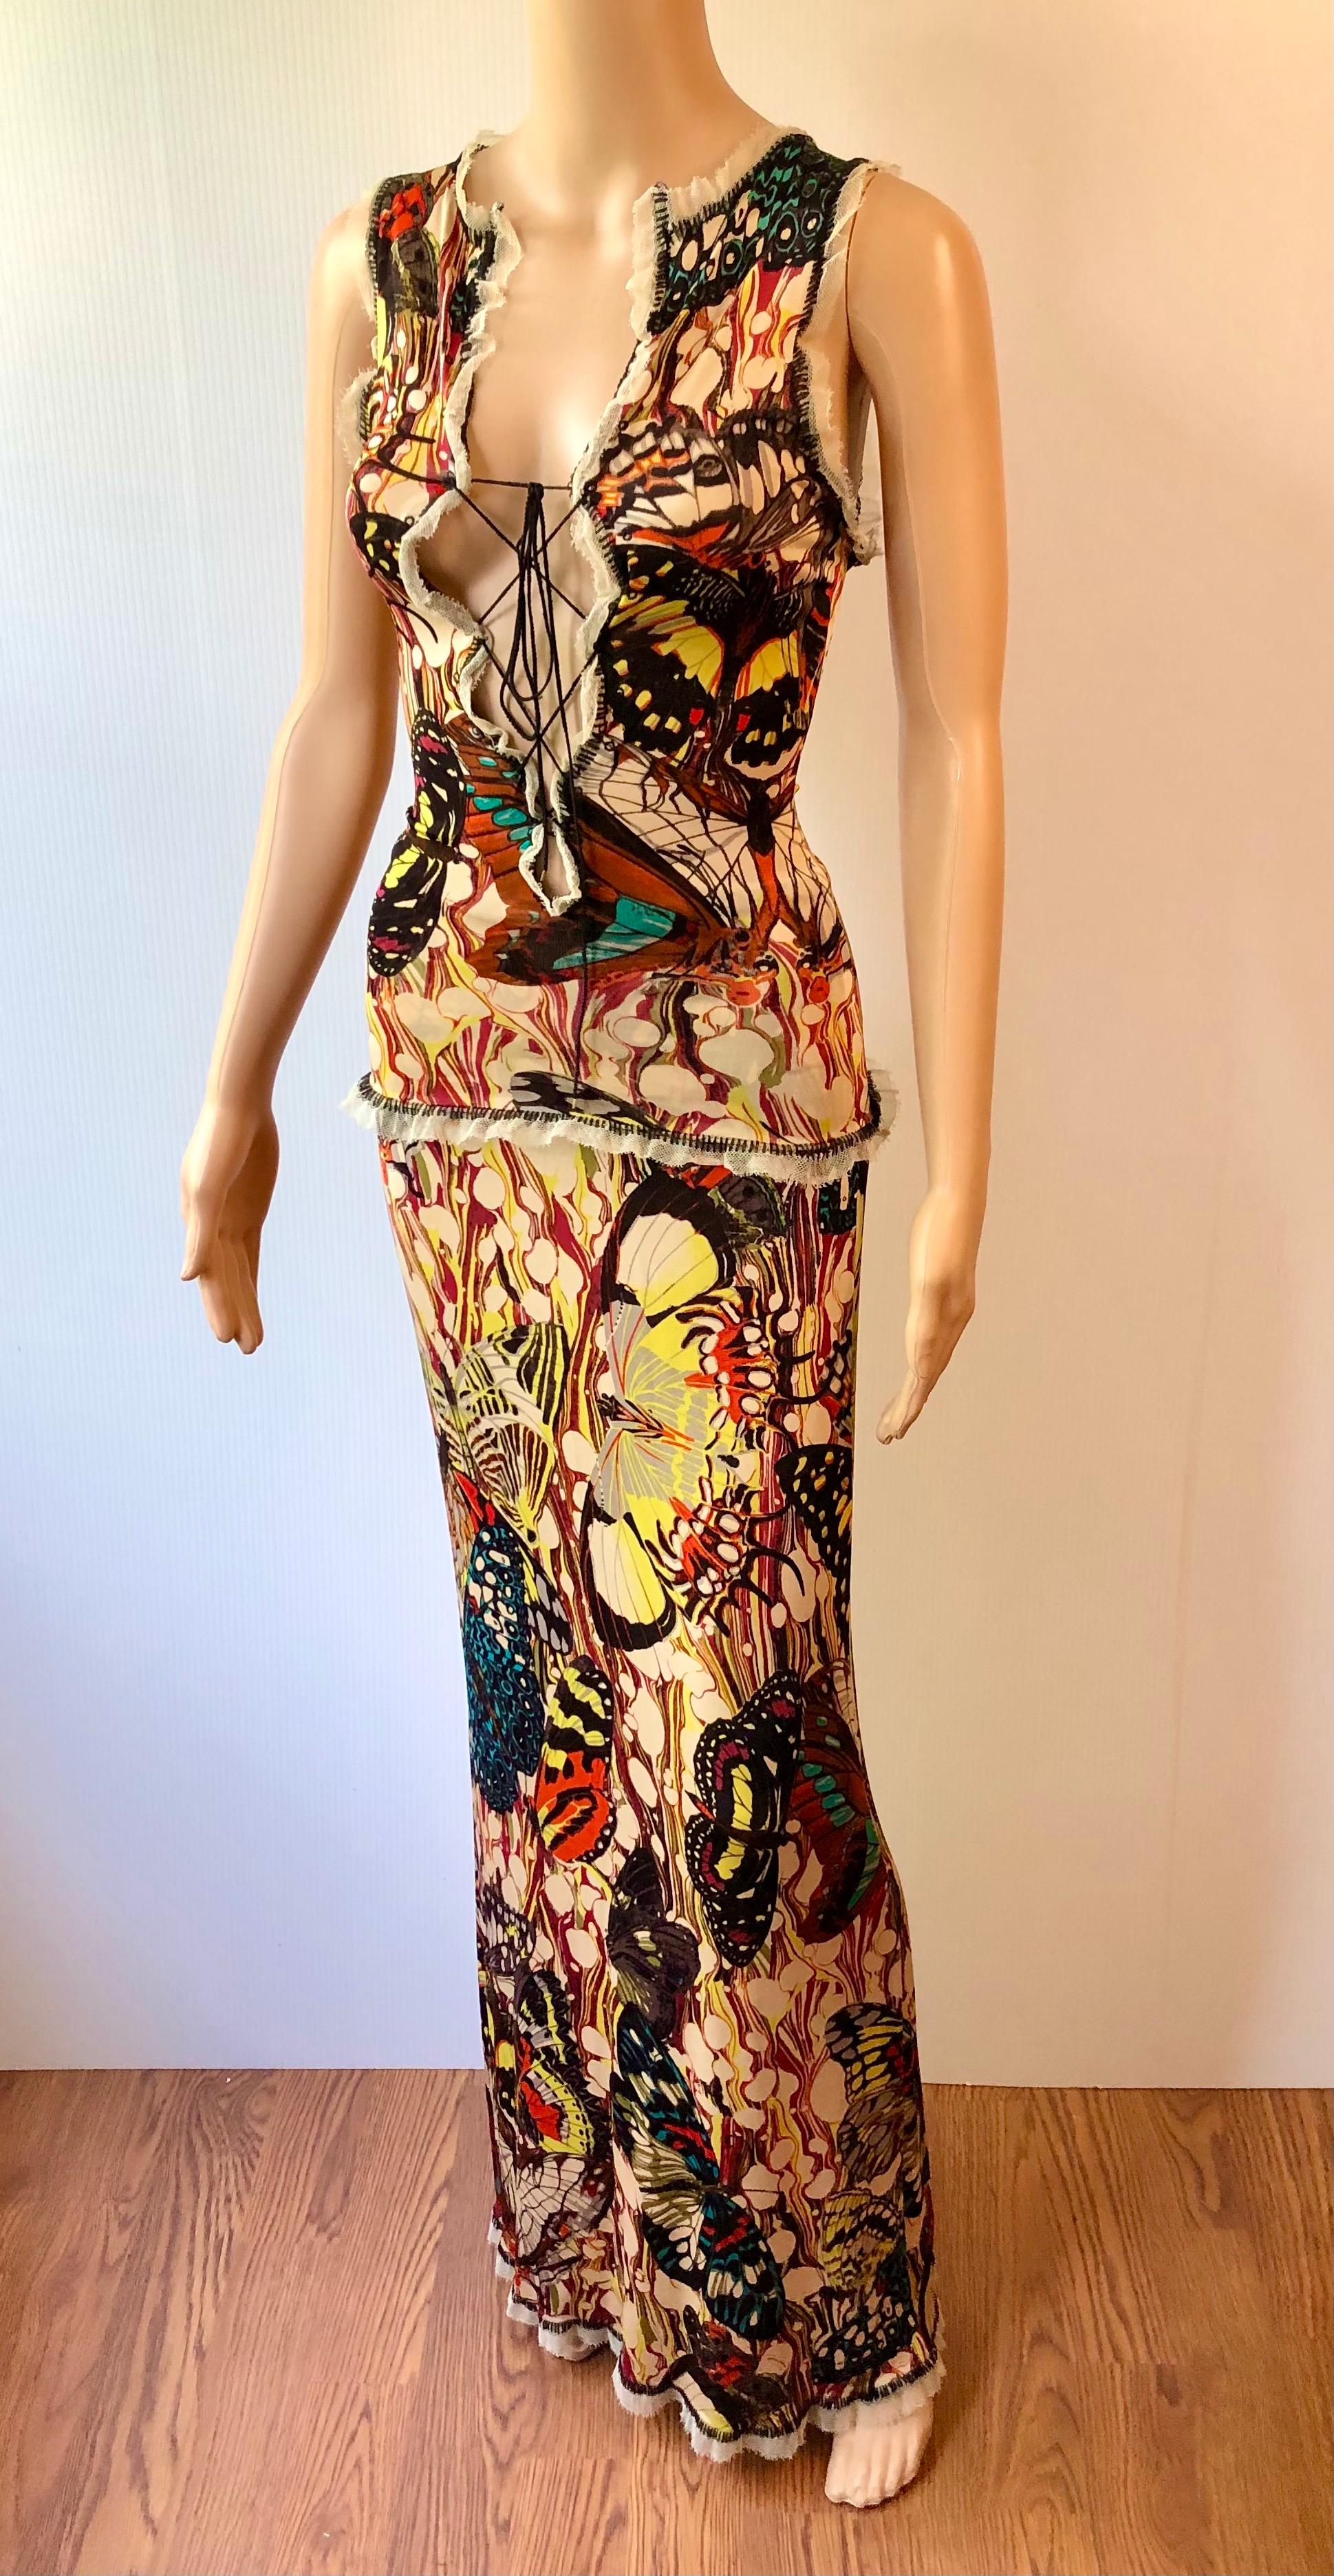 Jean Paul Gaultier S/S 2003 Vintage Butterfly Print Lace-Up Top & Maxi Skirt Ensemble 2 Piece Set Size M


